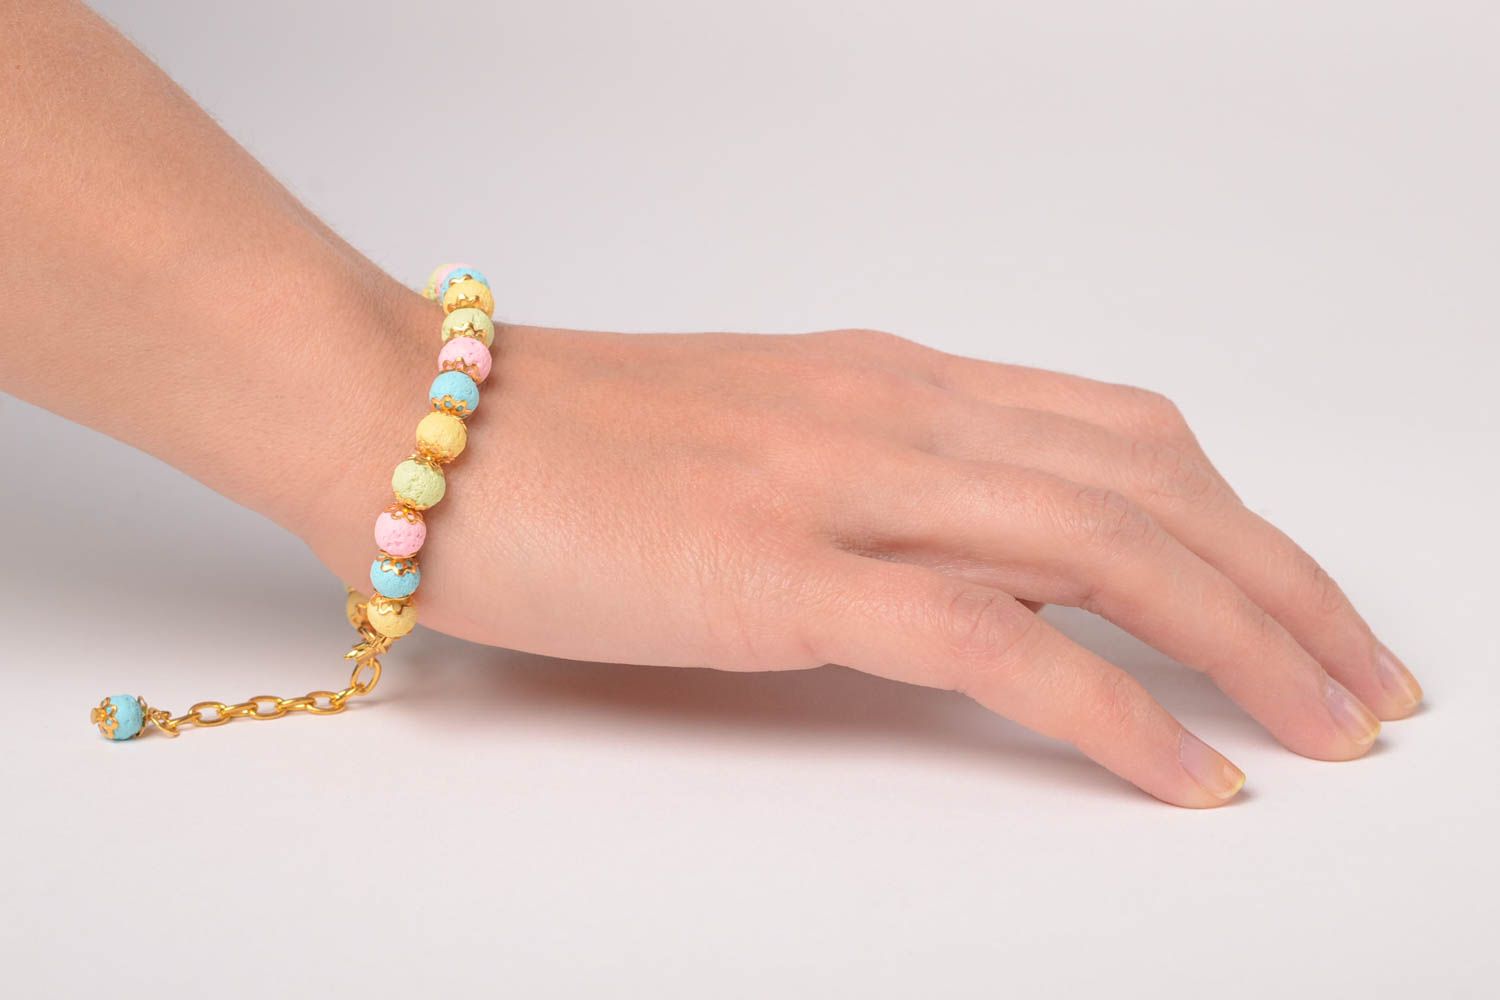 Homemade jewelry designer bracelet bead bracelets for women gifts for girls photo 3